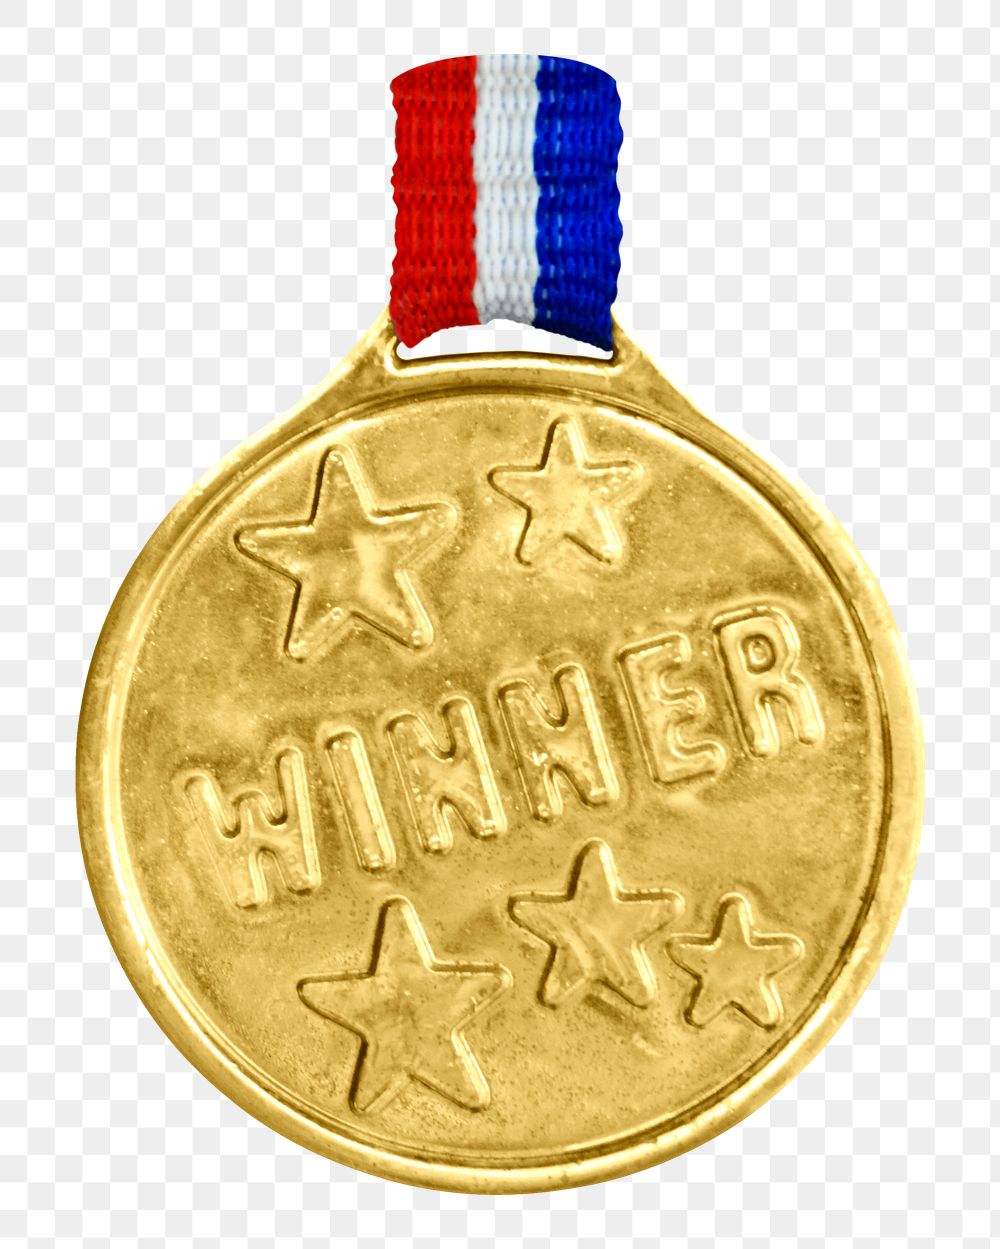 Gold winner medal png sticker, transparent background